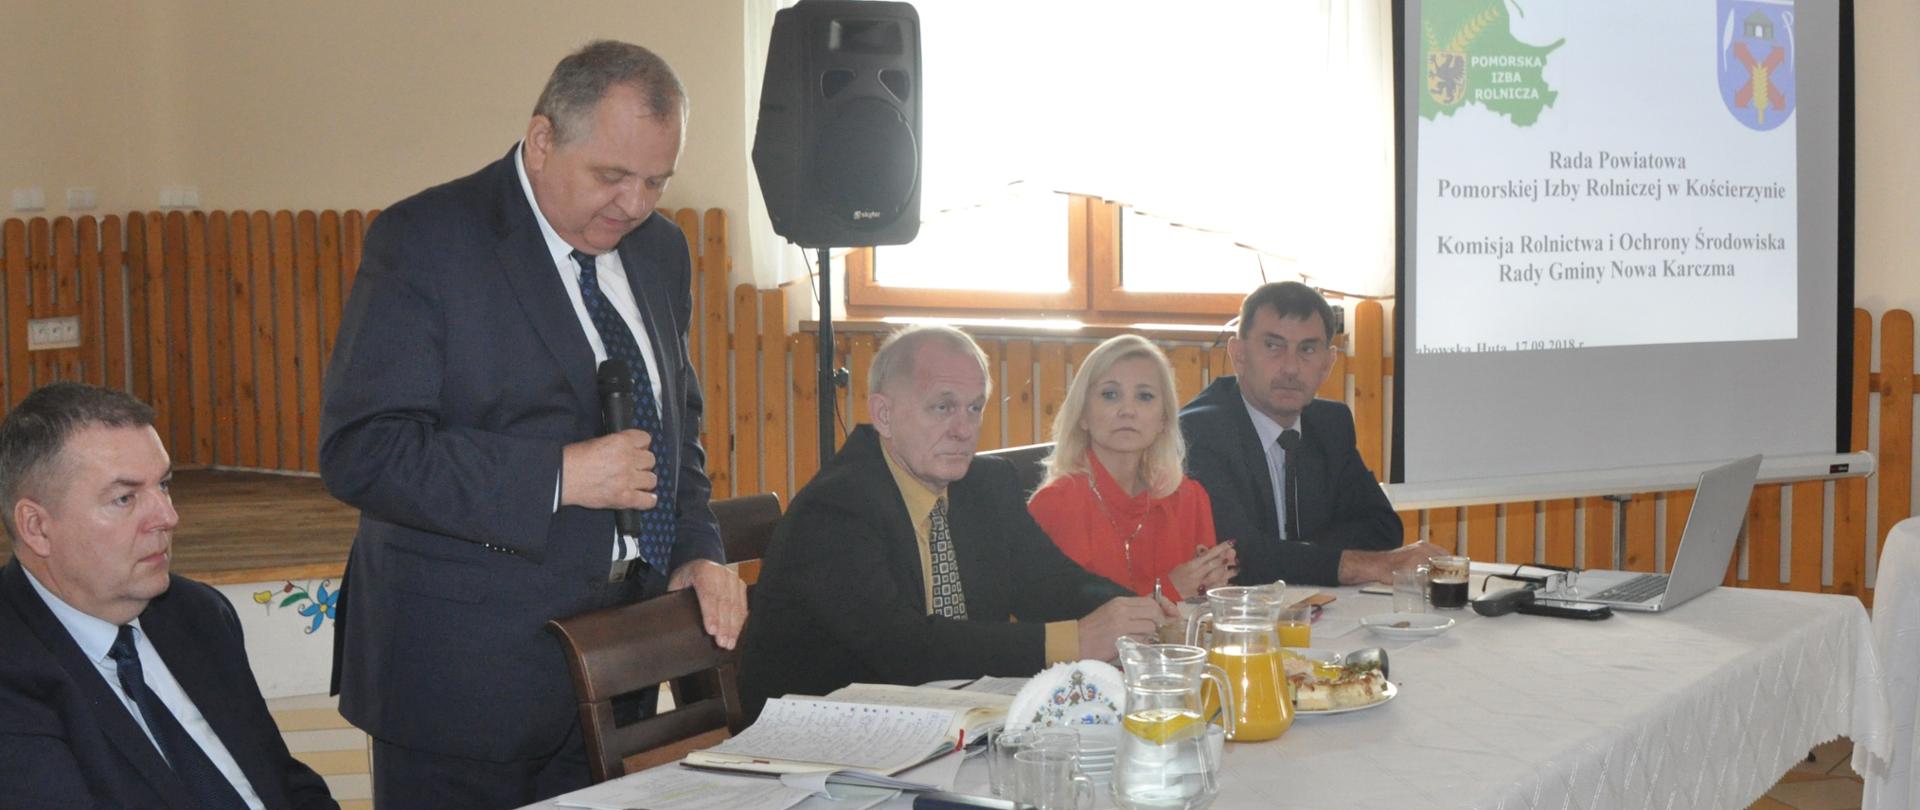 Wiceminister R. Zarudzki podczas wystąpienia na spotkaniu z pomorskimi rolnikami